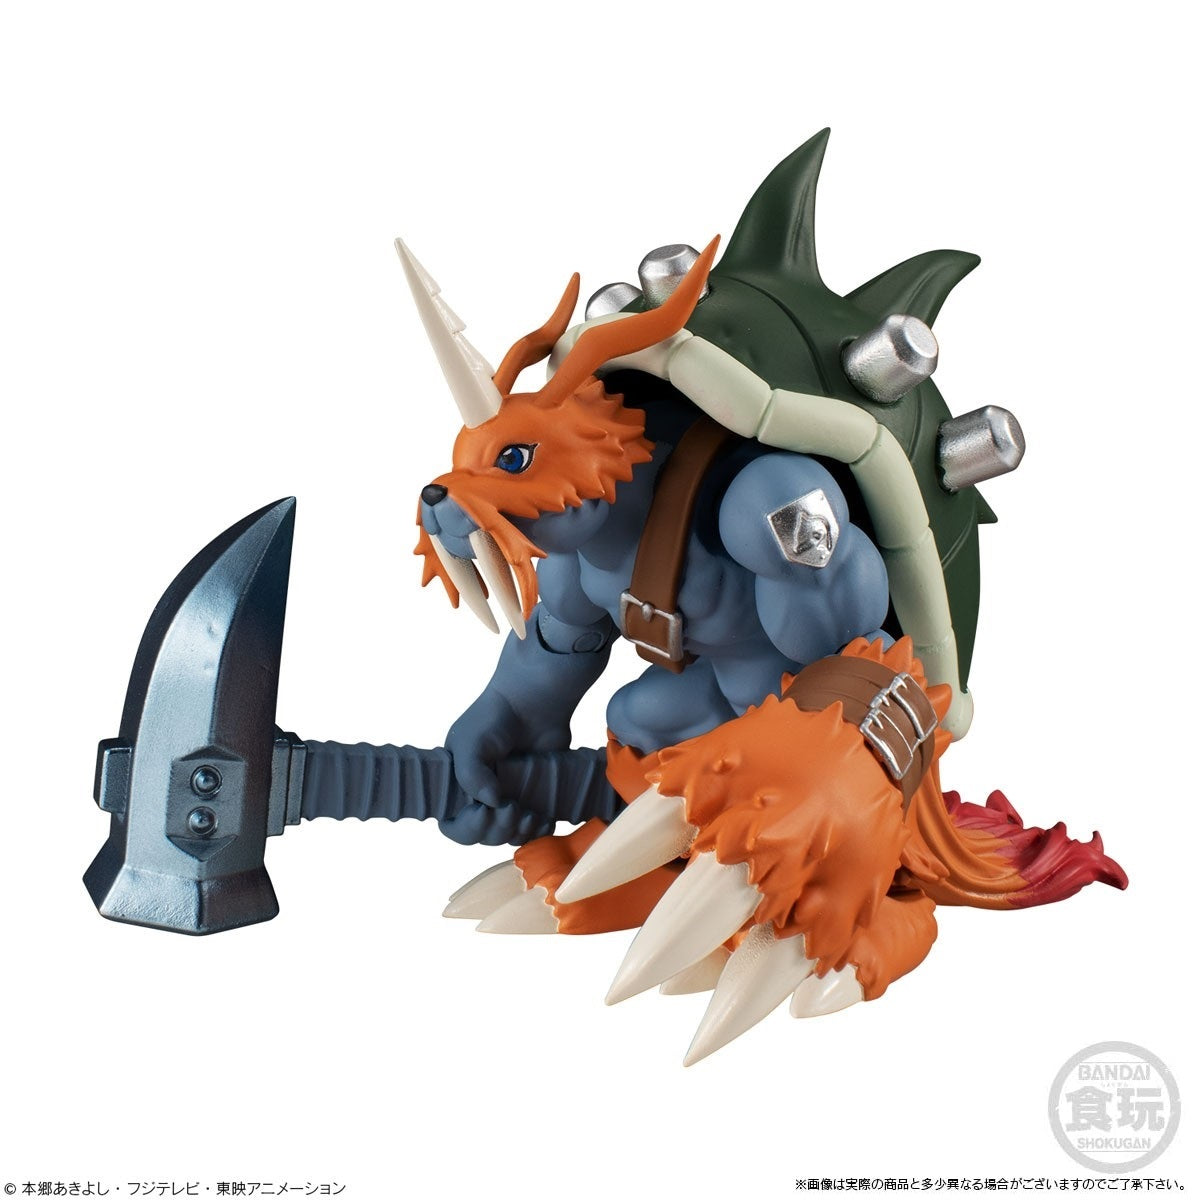 Shodo - Digimon - Zudomon